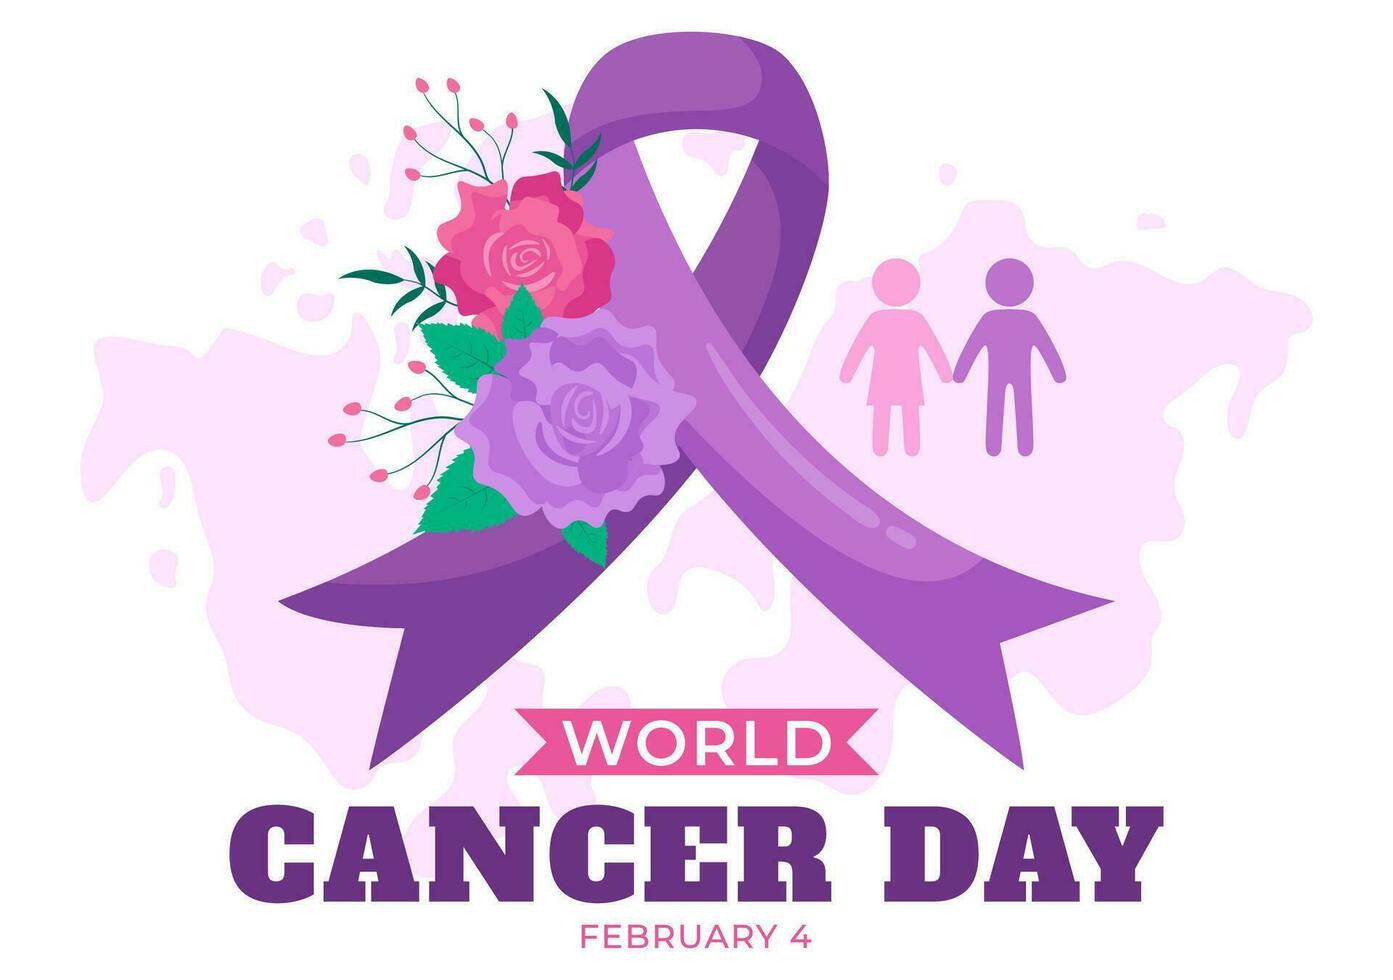 mundo cáncer día vector ilustración en febrero 4 4 con cinta a aumento conciencia de cáncer y hembra cuidado de la salud en plano dibujos animados antecedentes